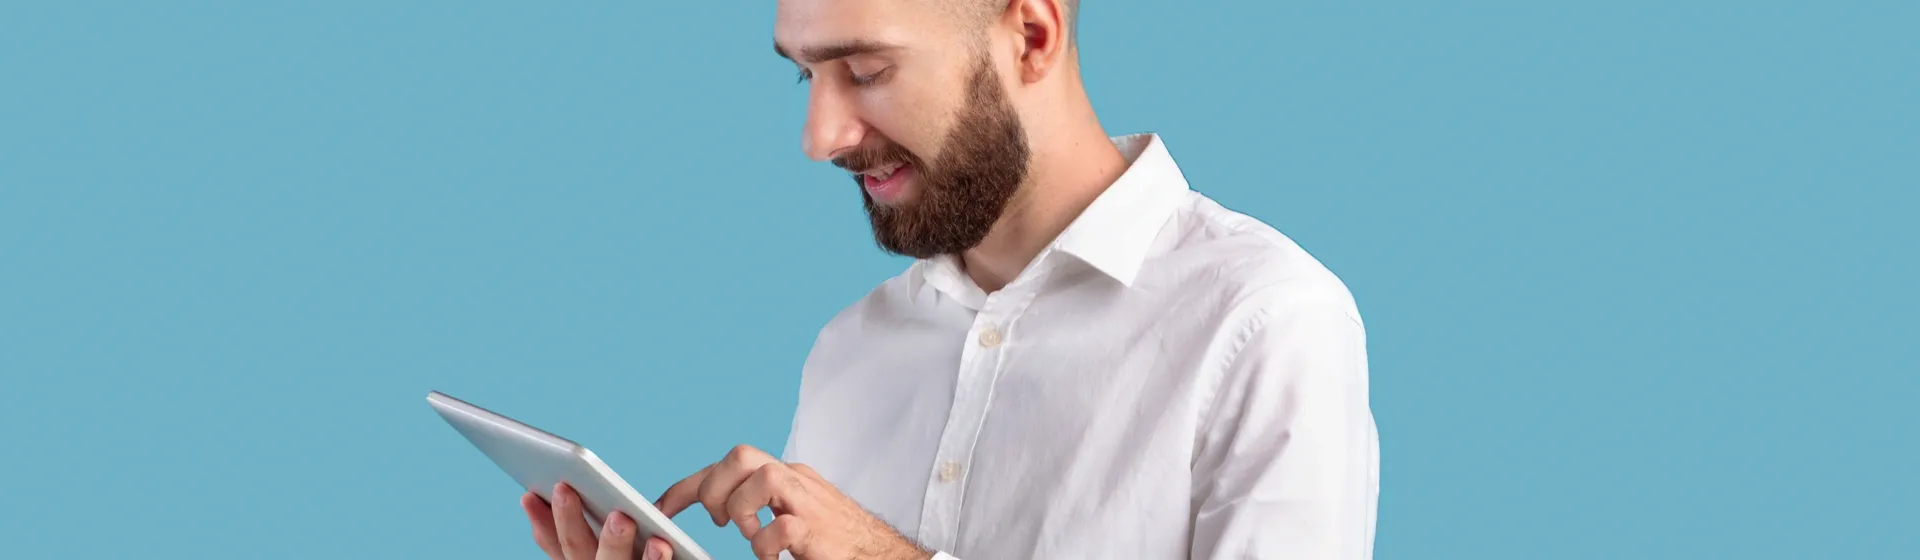 Homem usando tablet em fundo azul